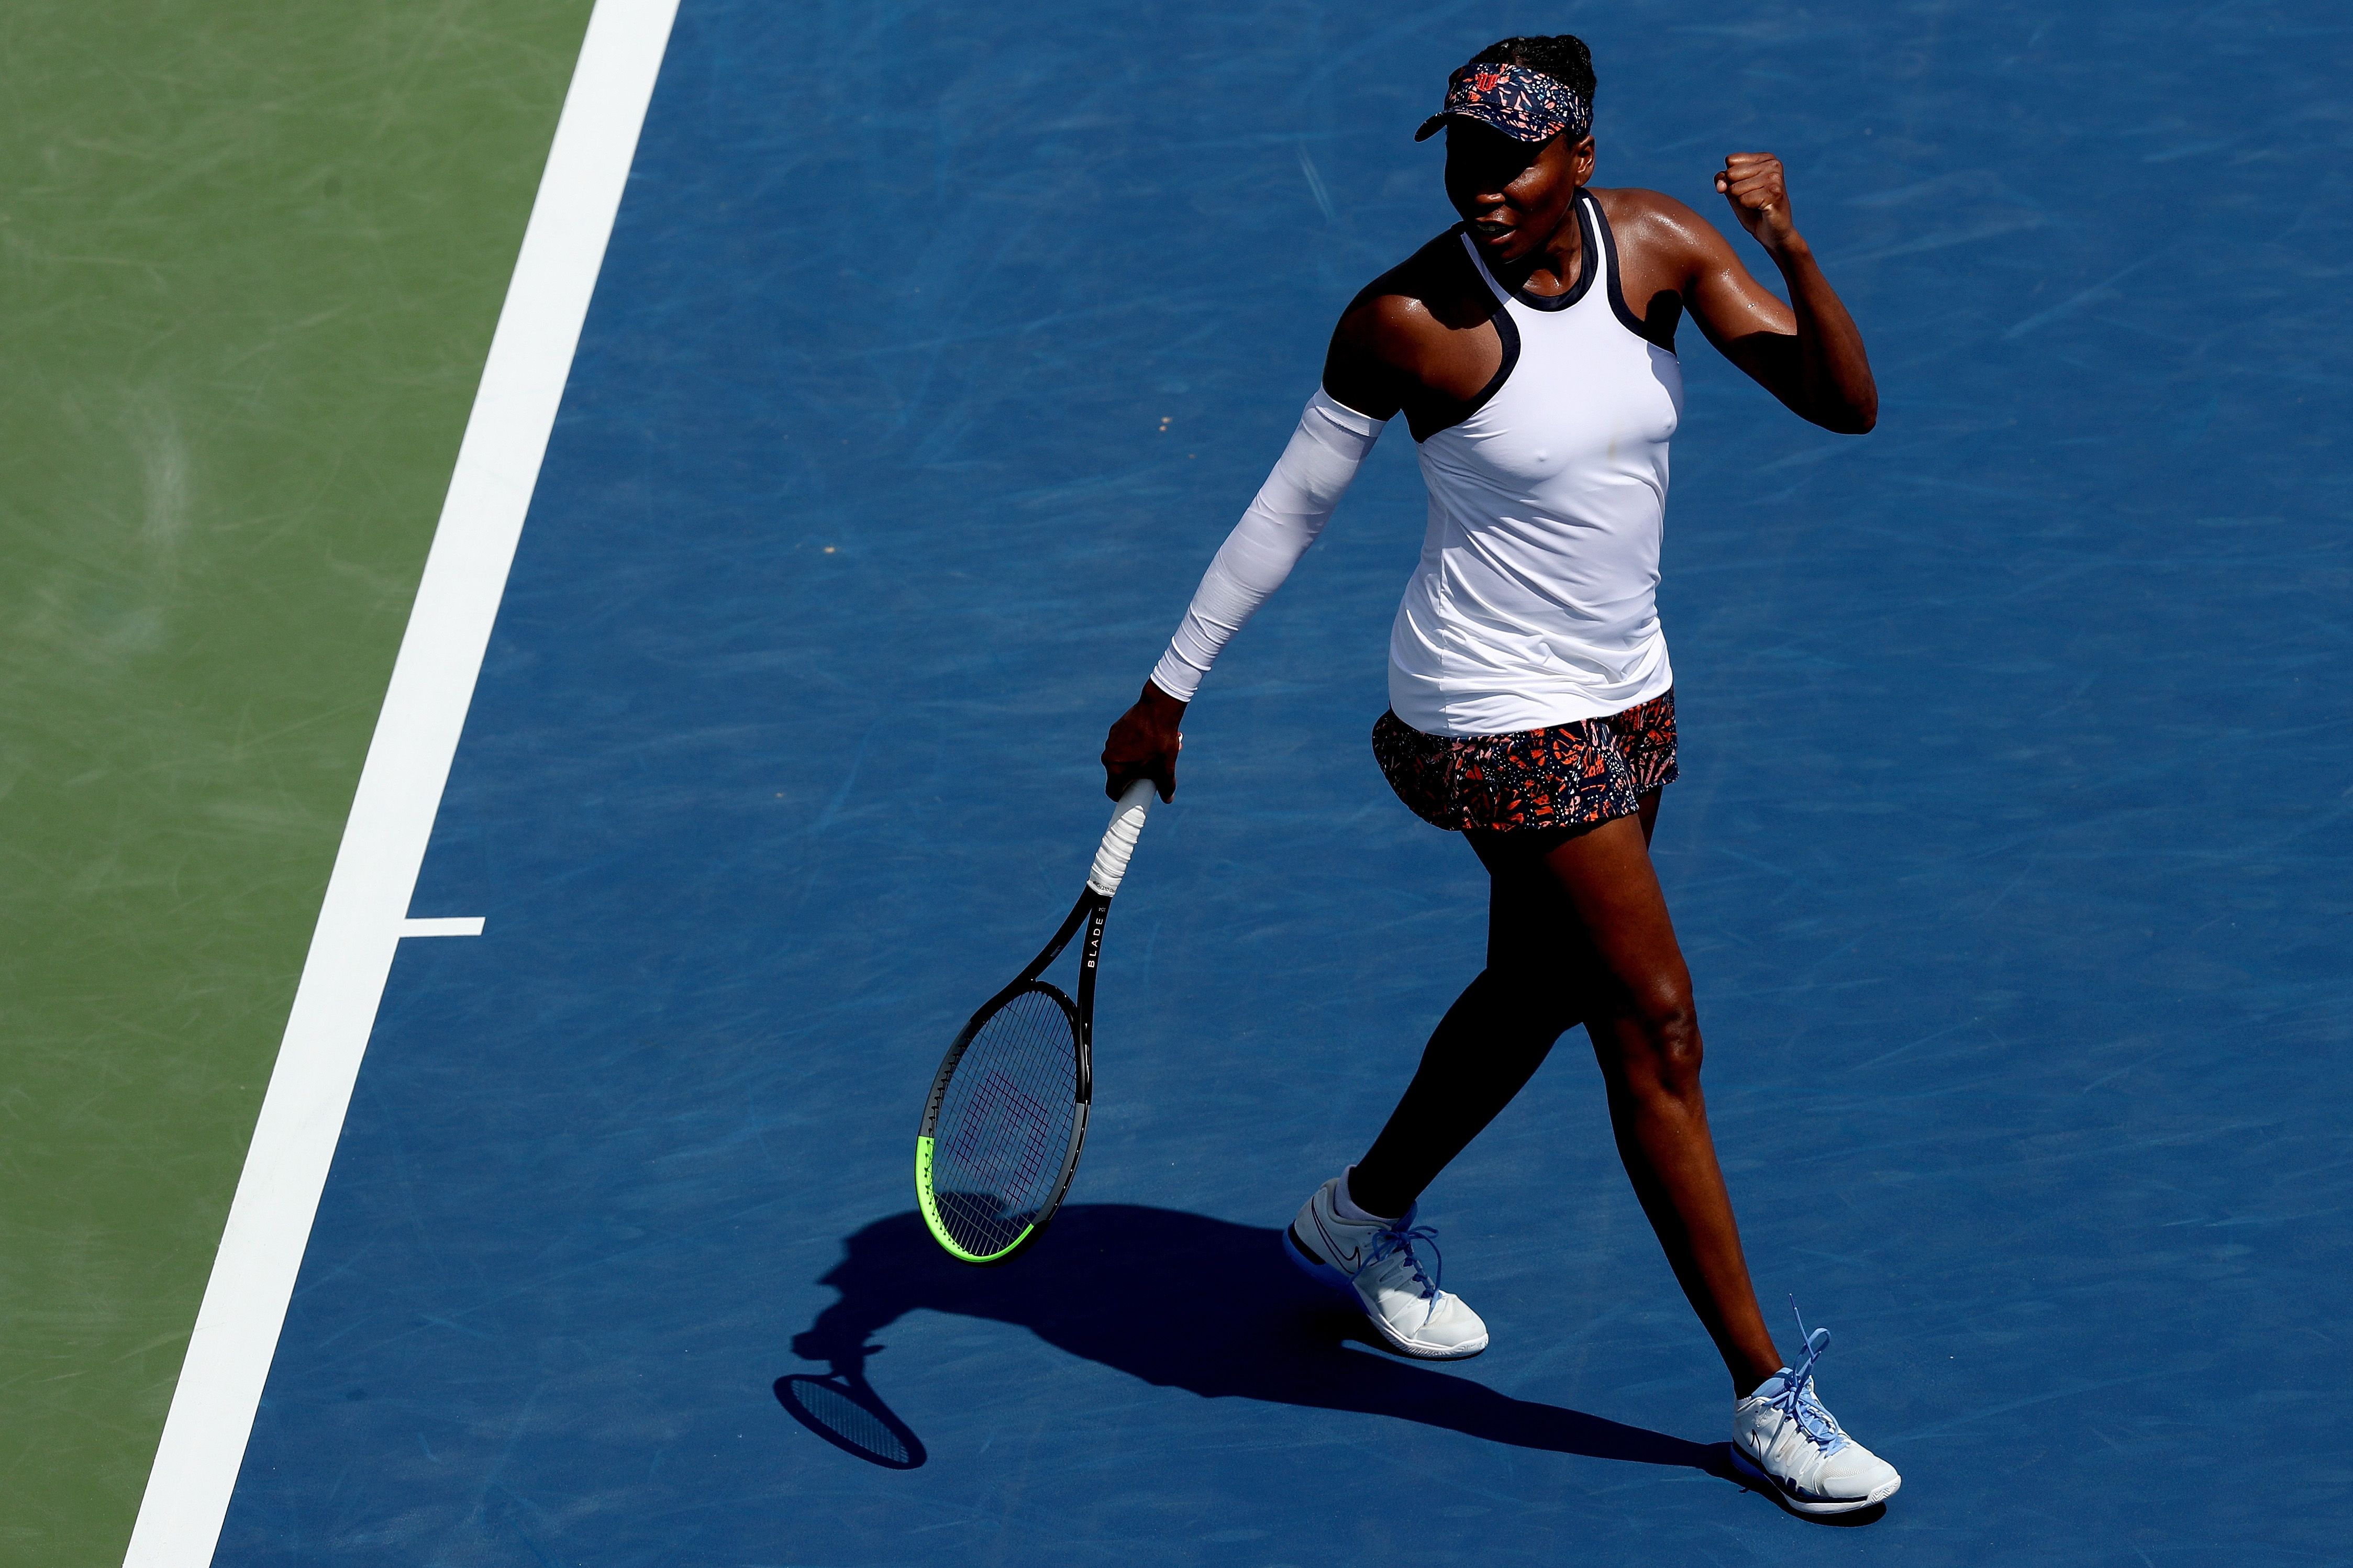 American tennis legend Venus Williams